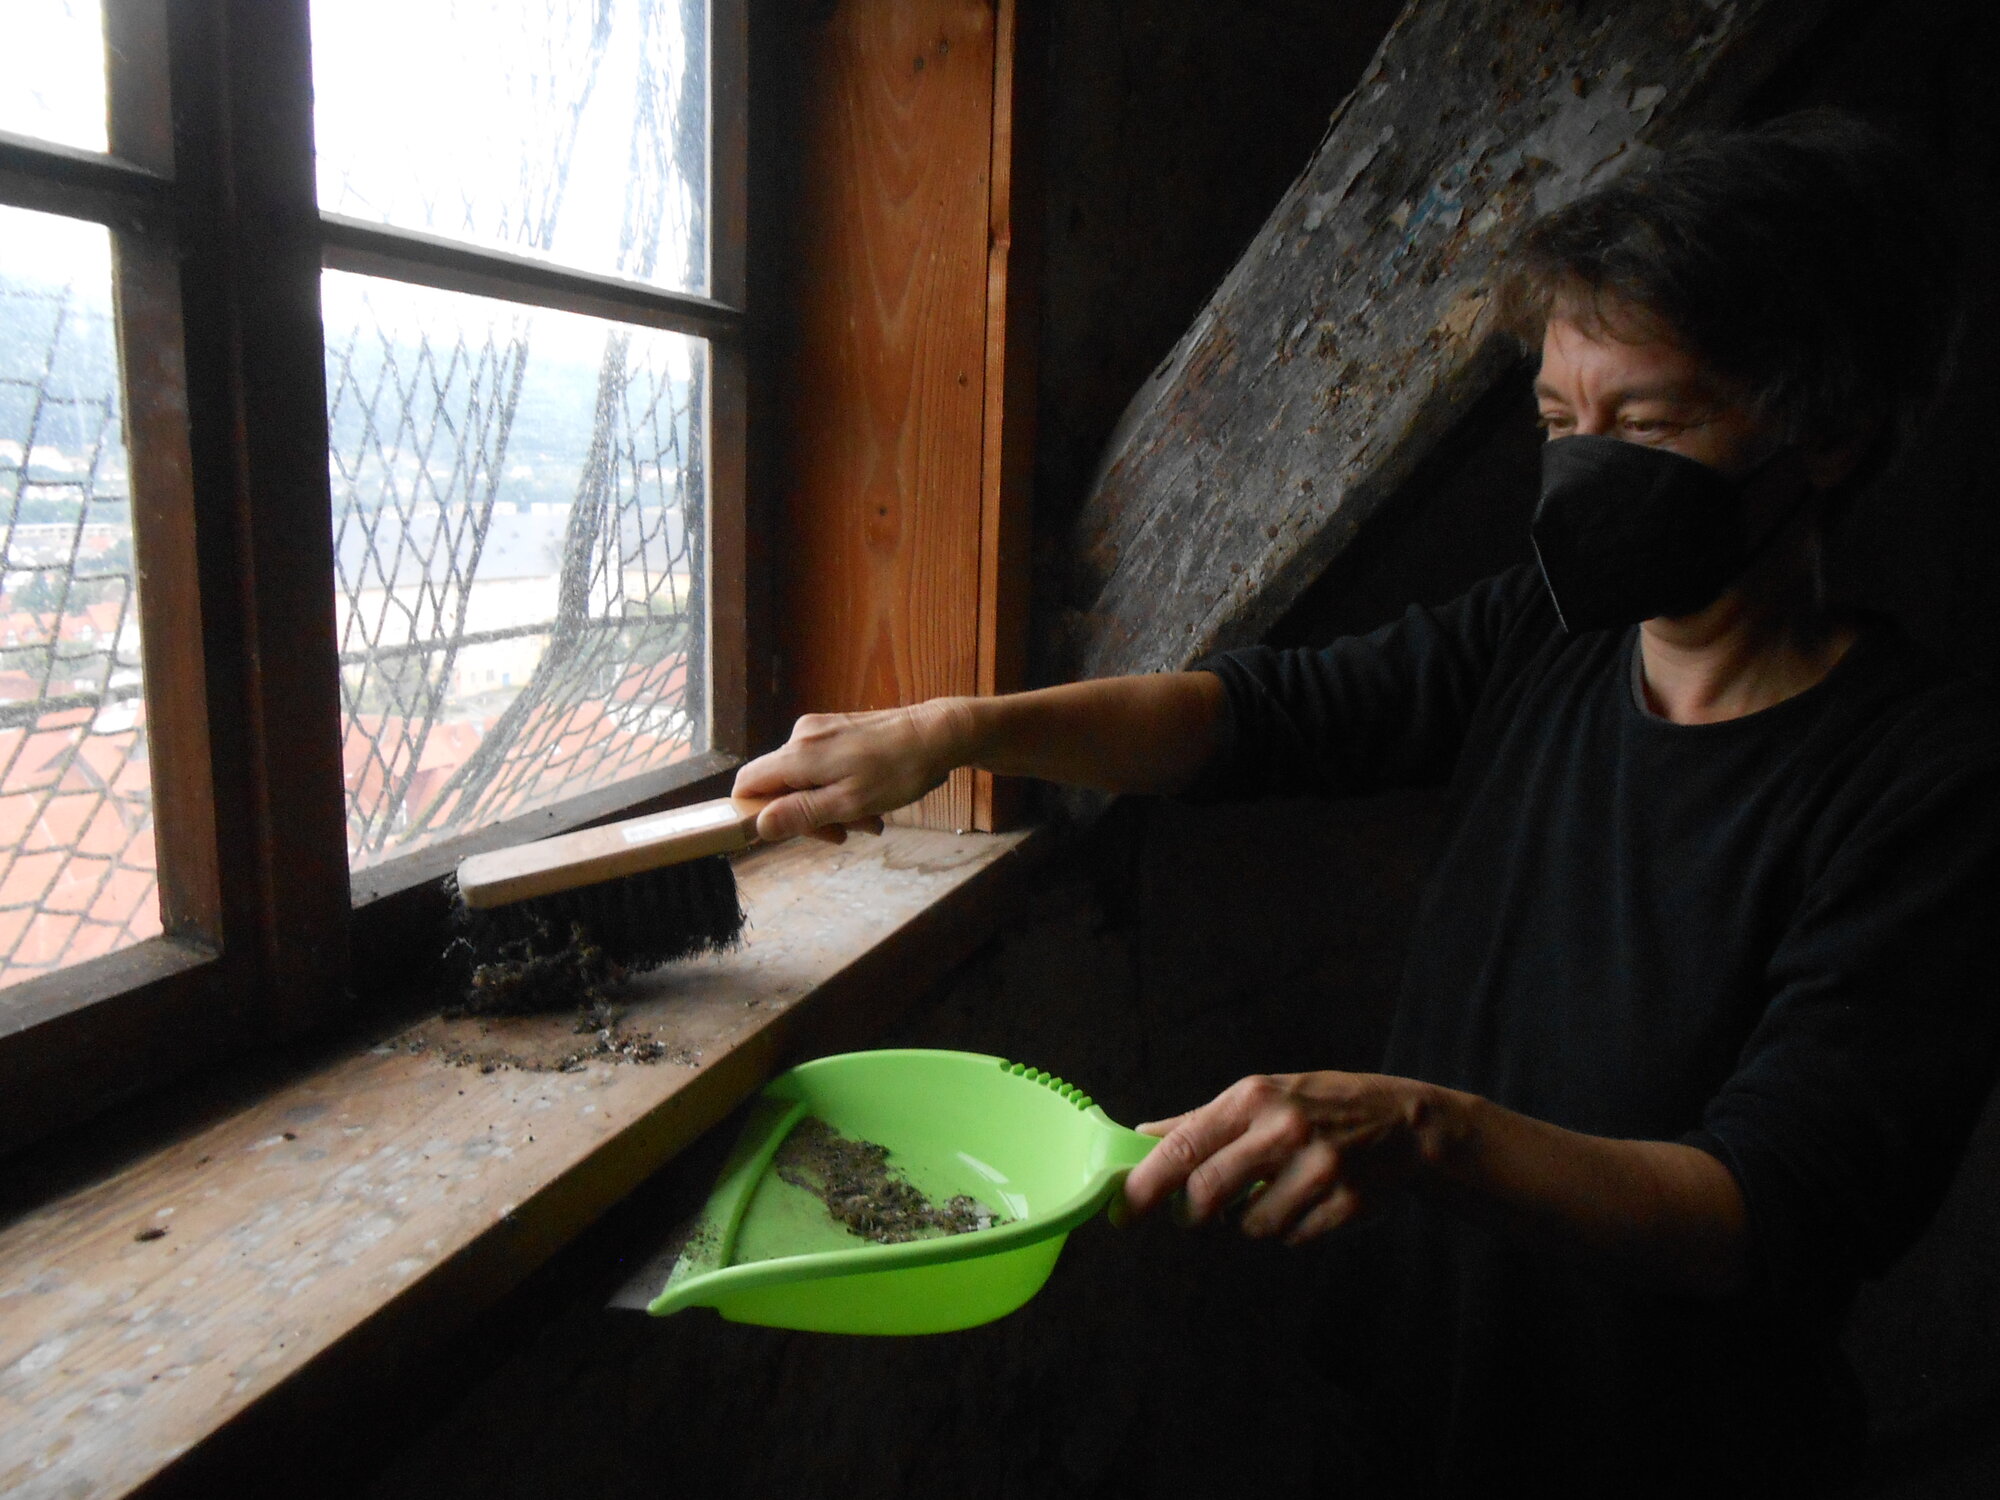 Frau mit grünem Kehrblech und Handfeger am Fenster